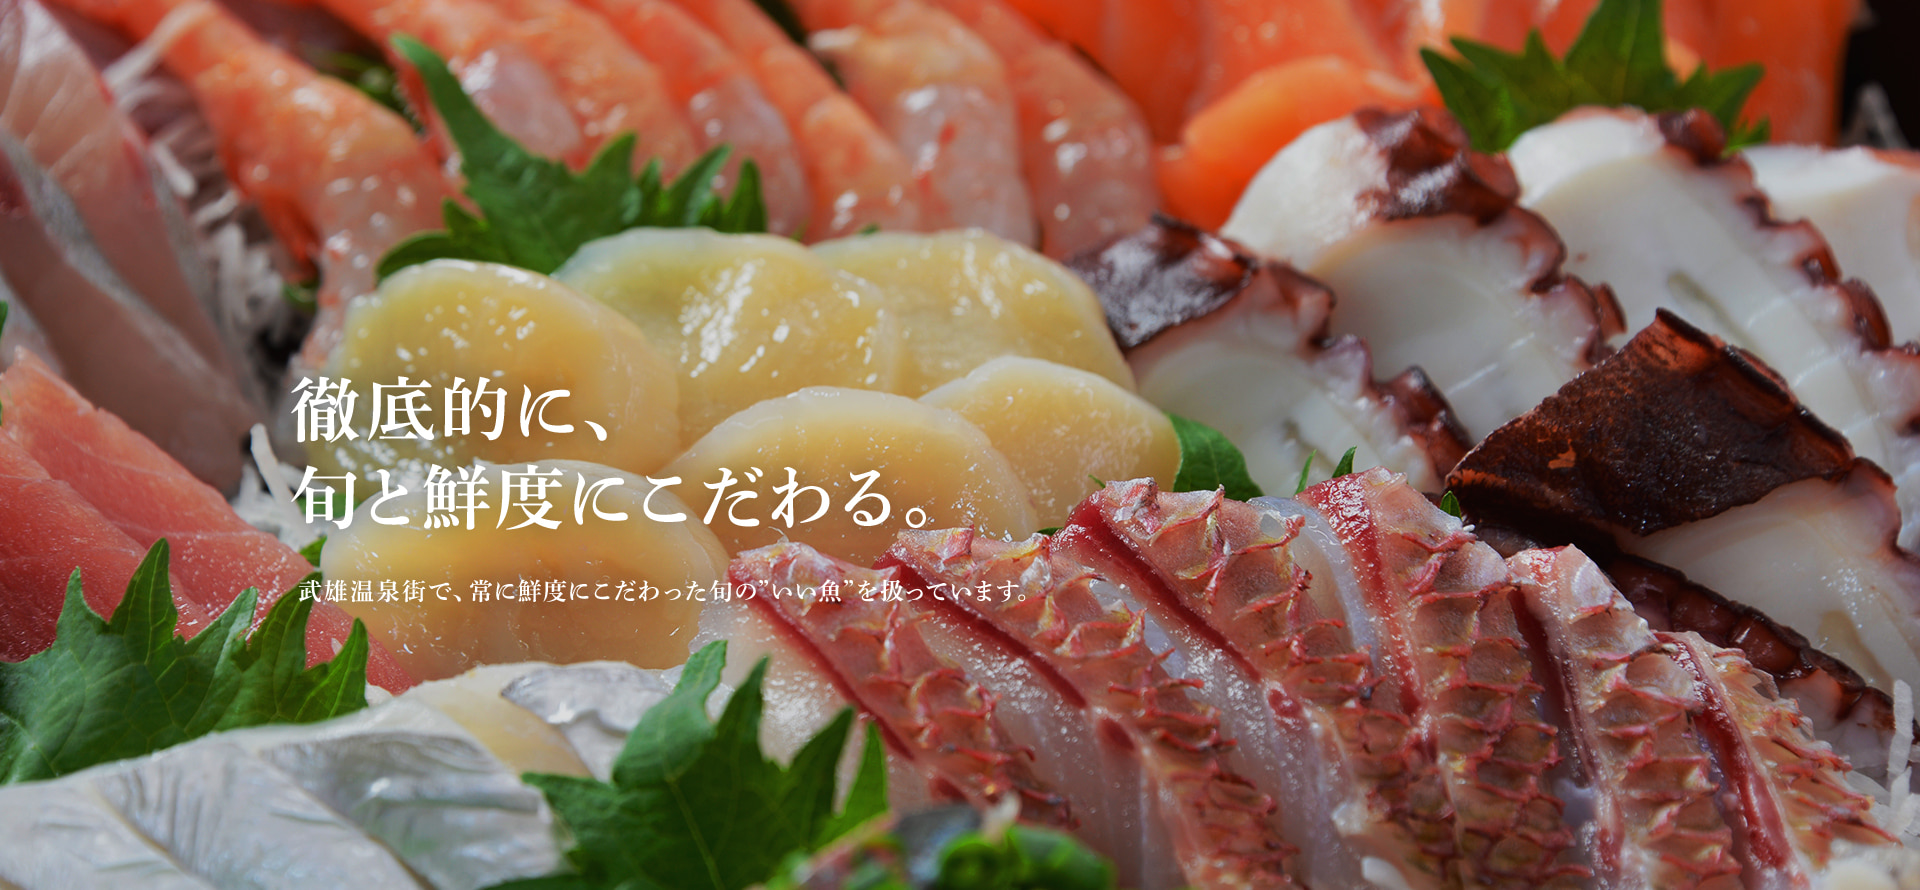 徹底的に、旬と鮮度にこだわる。武雄温泉街で、常に鮮度にこだわった旬の”いい魚”を扱っています。